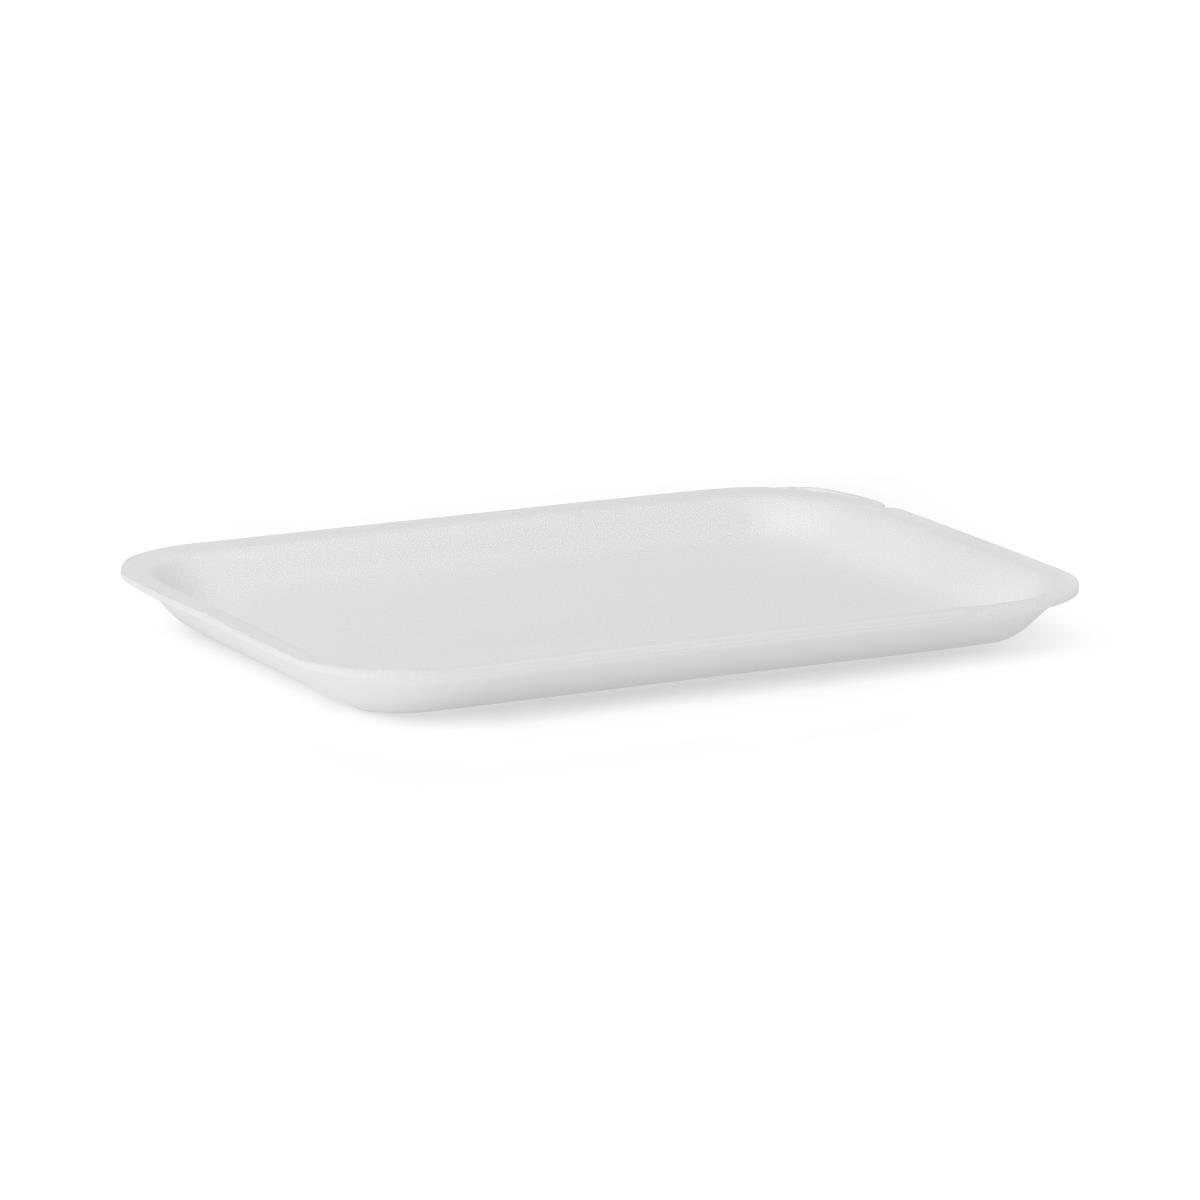 2LB White Foam Tray 5.75 x 8.25 - 500/ct